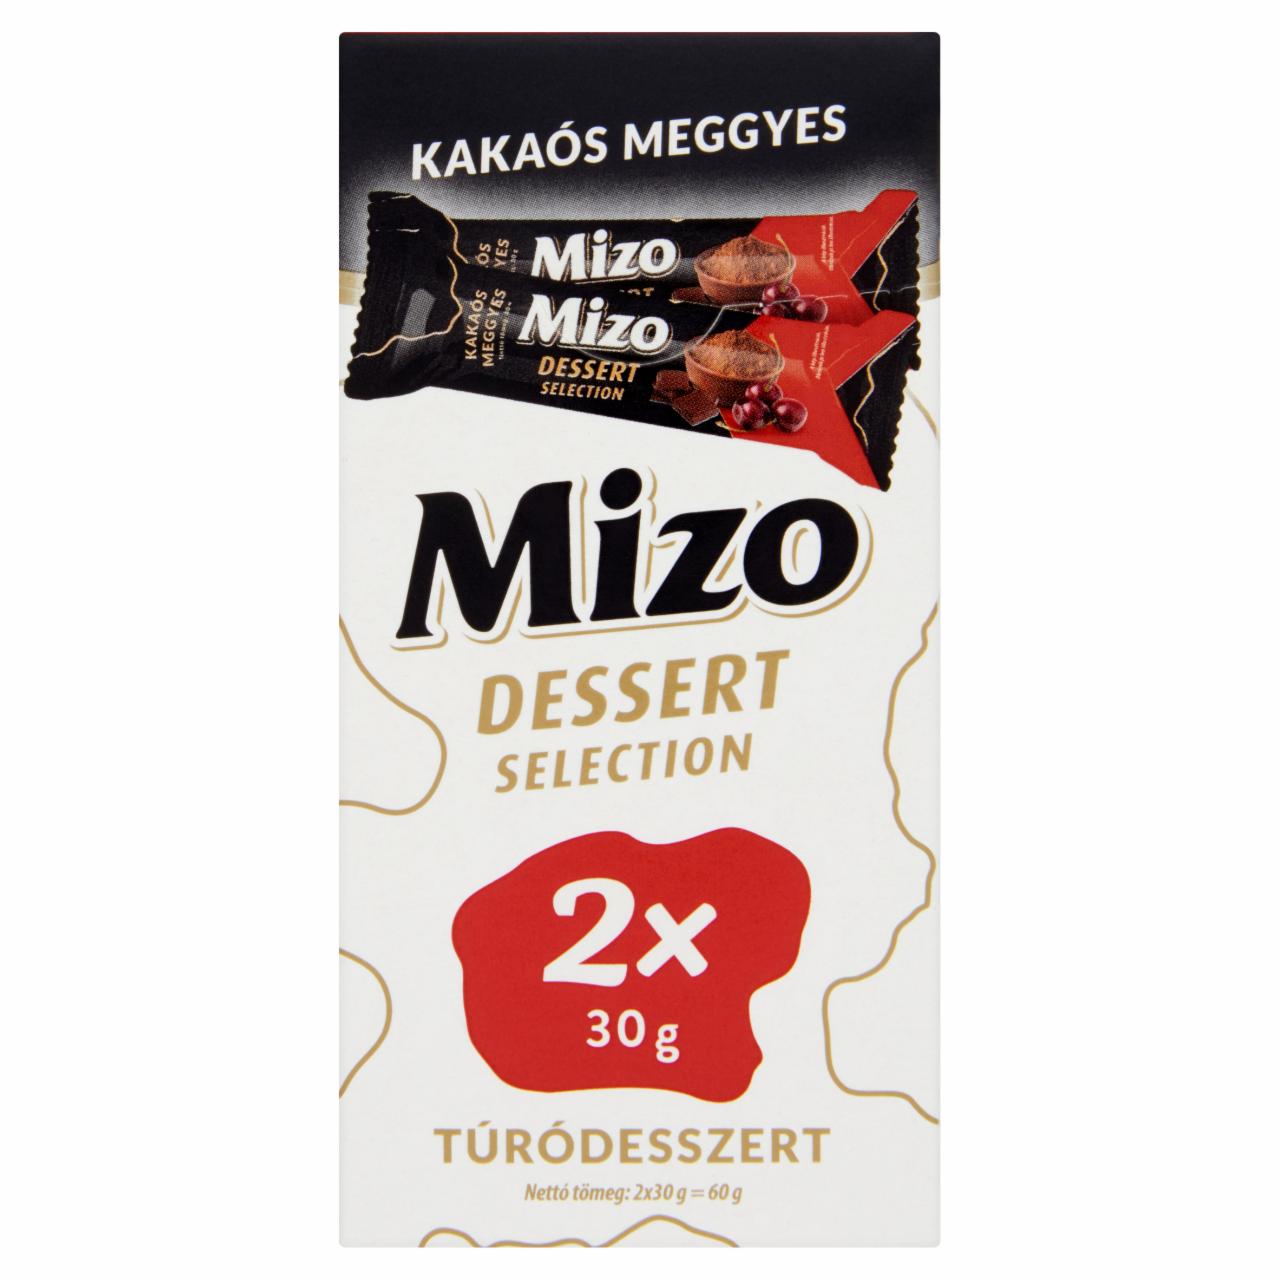 Képek - Mizo Dessert Selection kakaós meggyes túródesszert 2 x 30 g